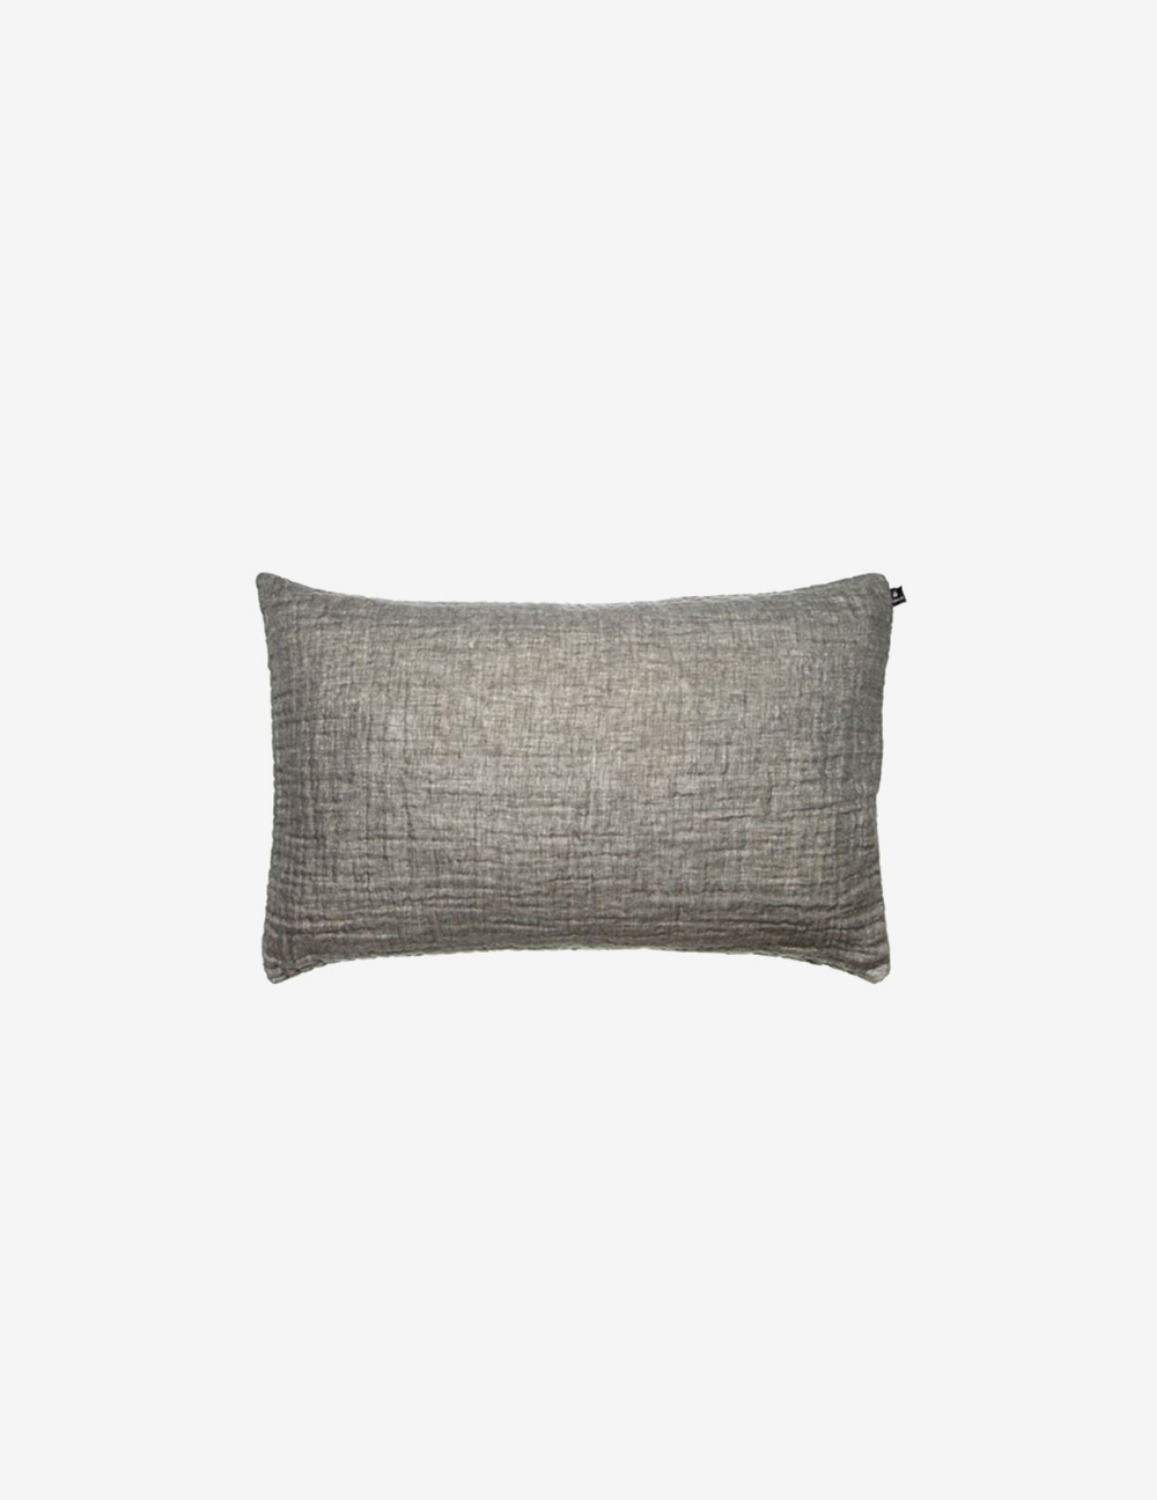 [HIMLA] Hannelin Cushion / Charcoal (70x50)